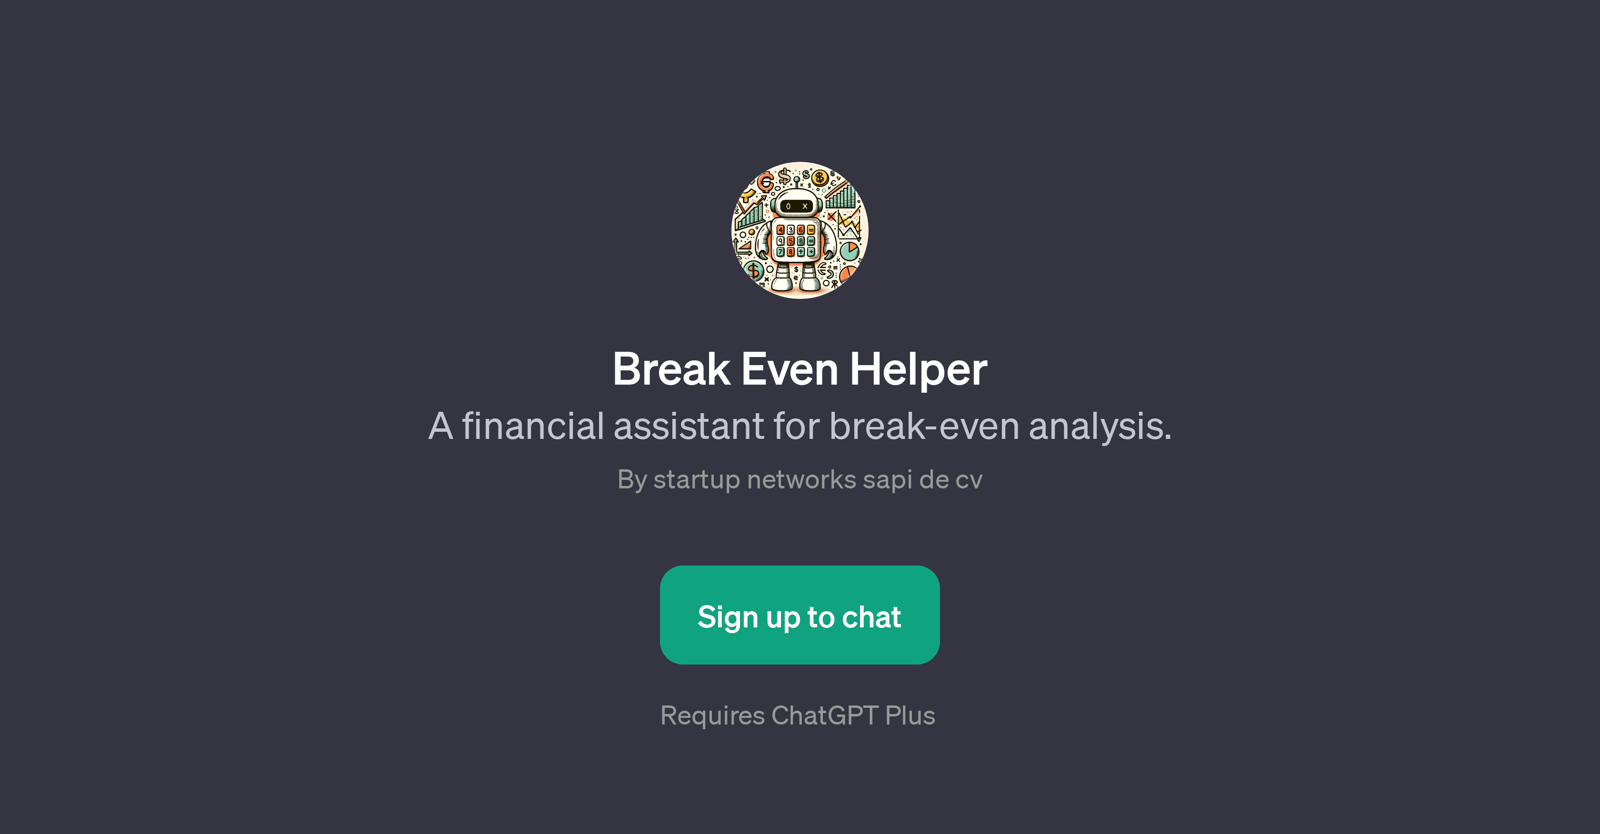 Break Even Helper website